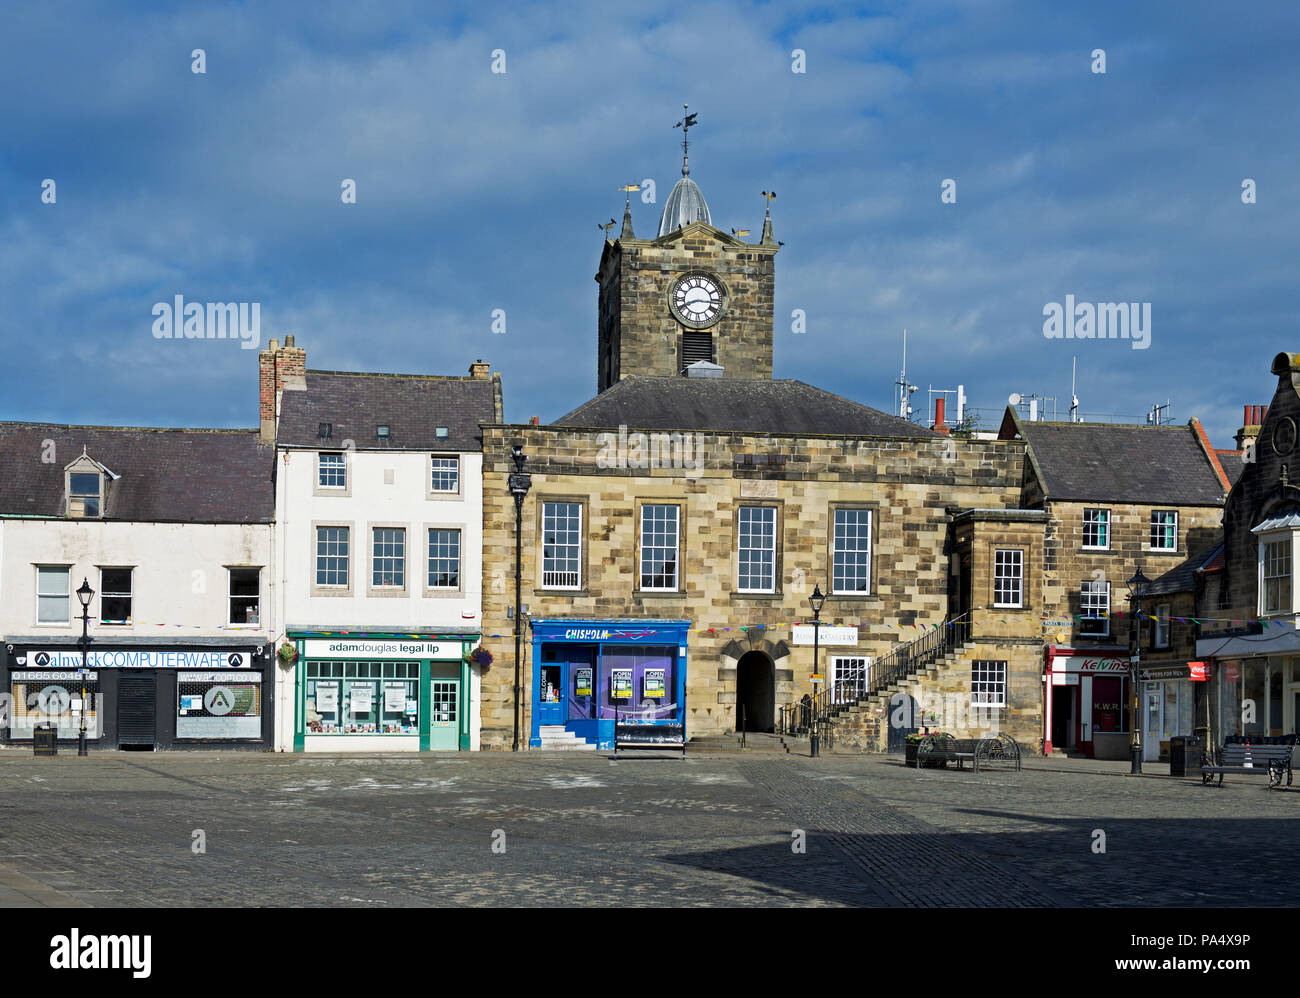 Das alte Rathaus, Marktplatz, Alnwick, Northumberland, England Großbritannien Stockfoto